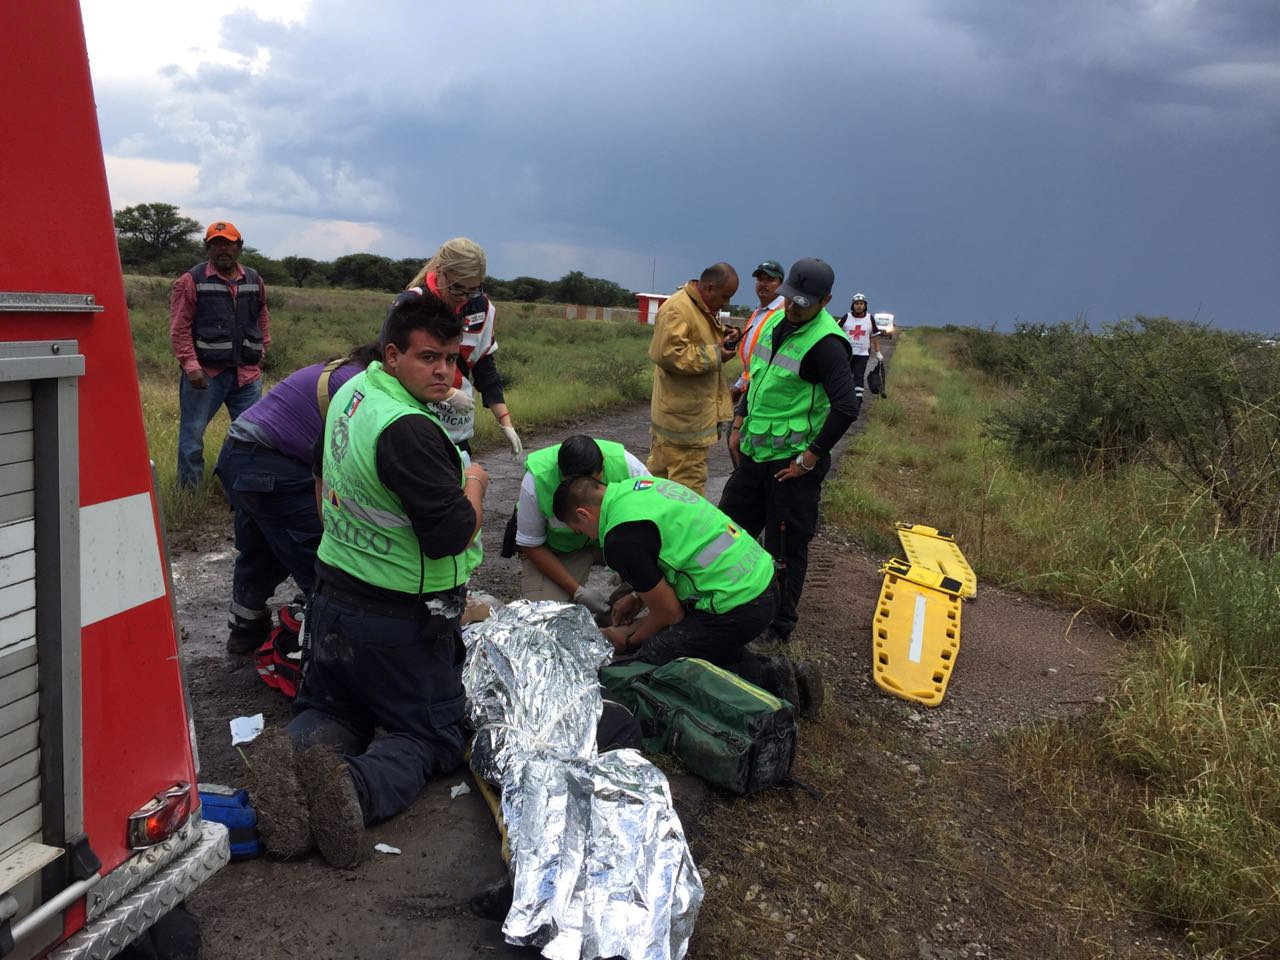 EN FOTOS: El milagroso accidente de avión en México que no dejó muertos